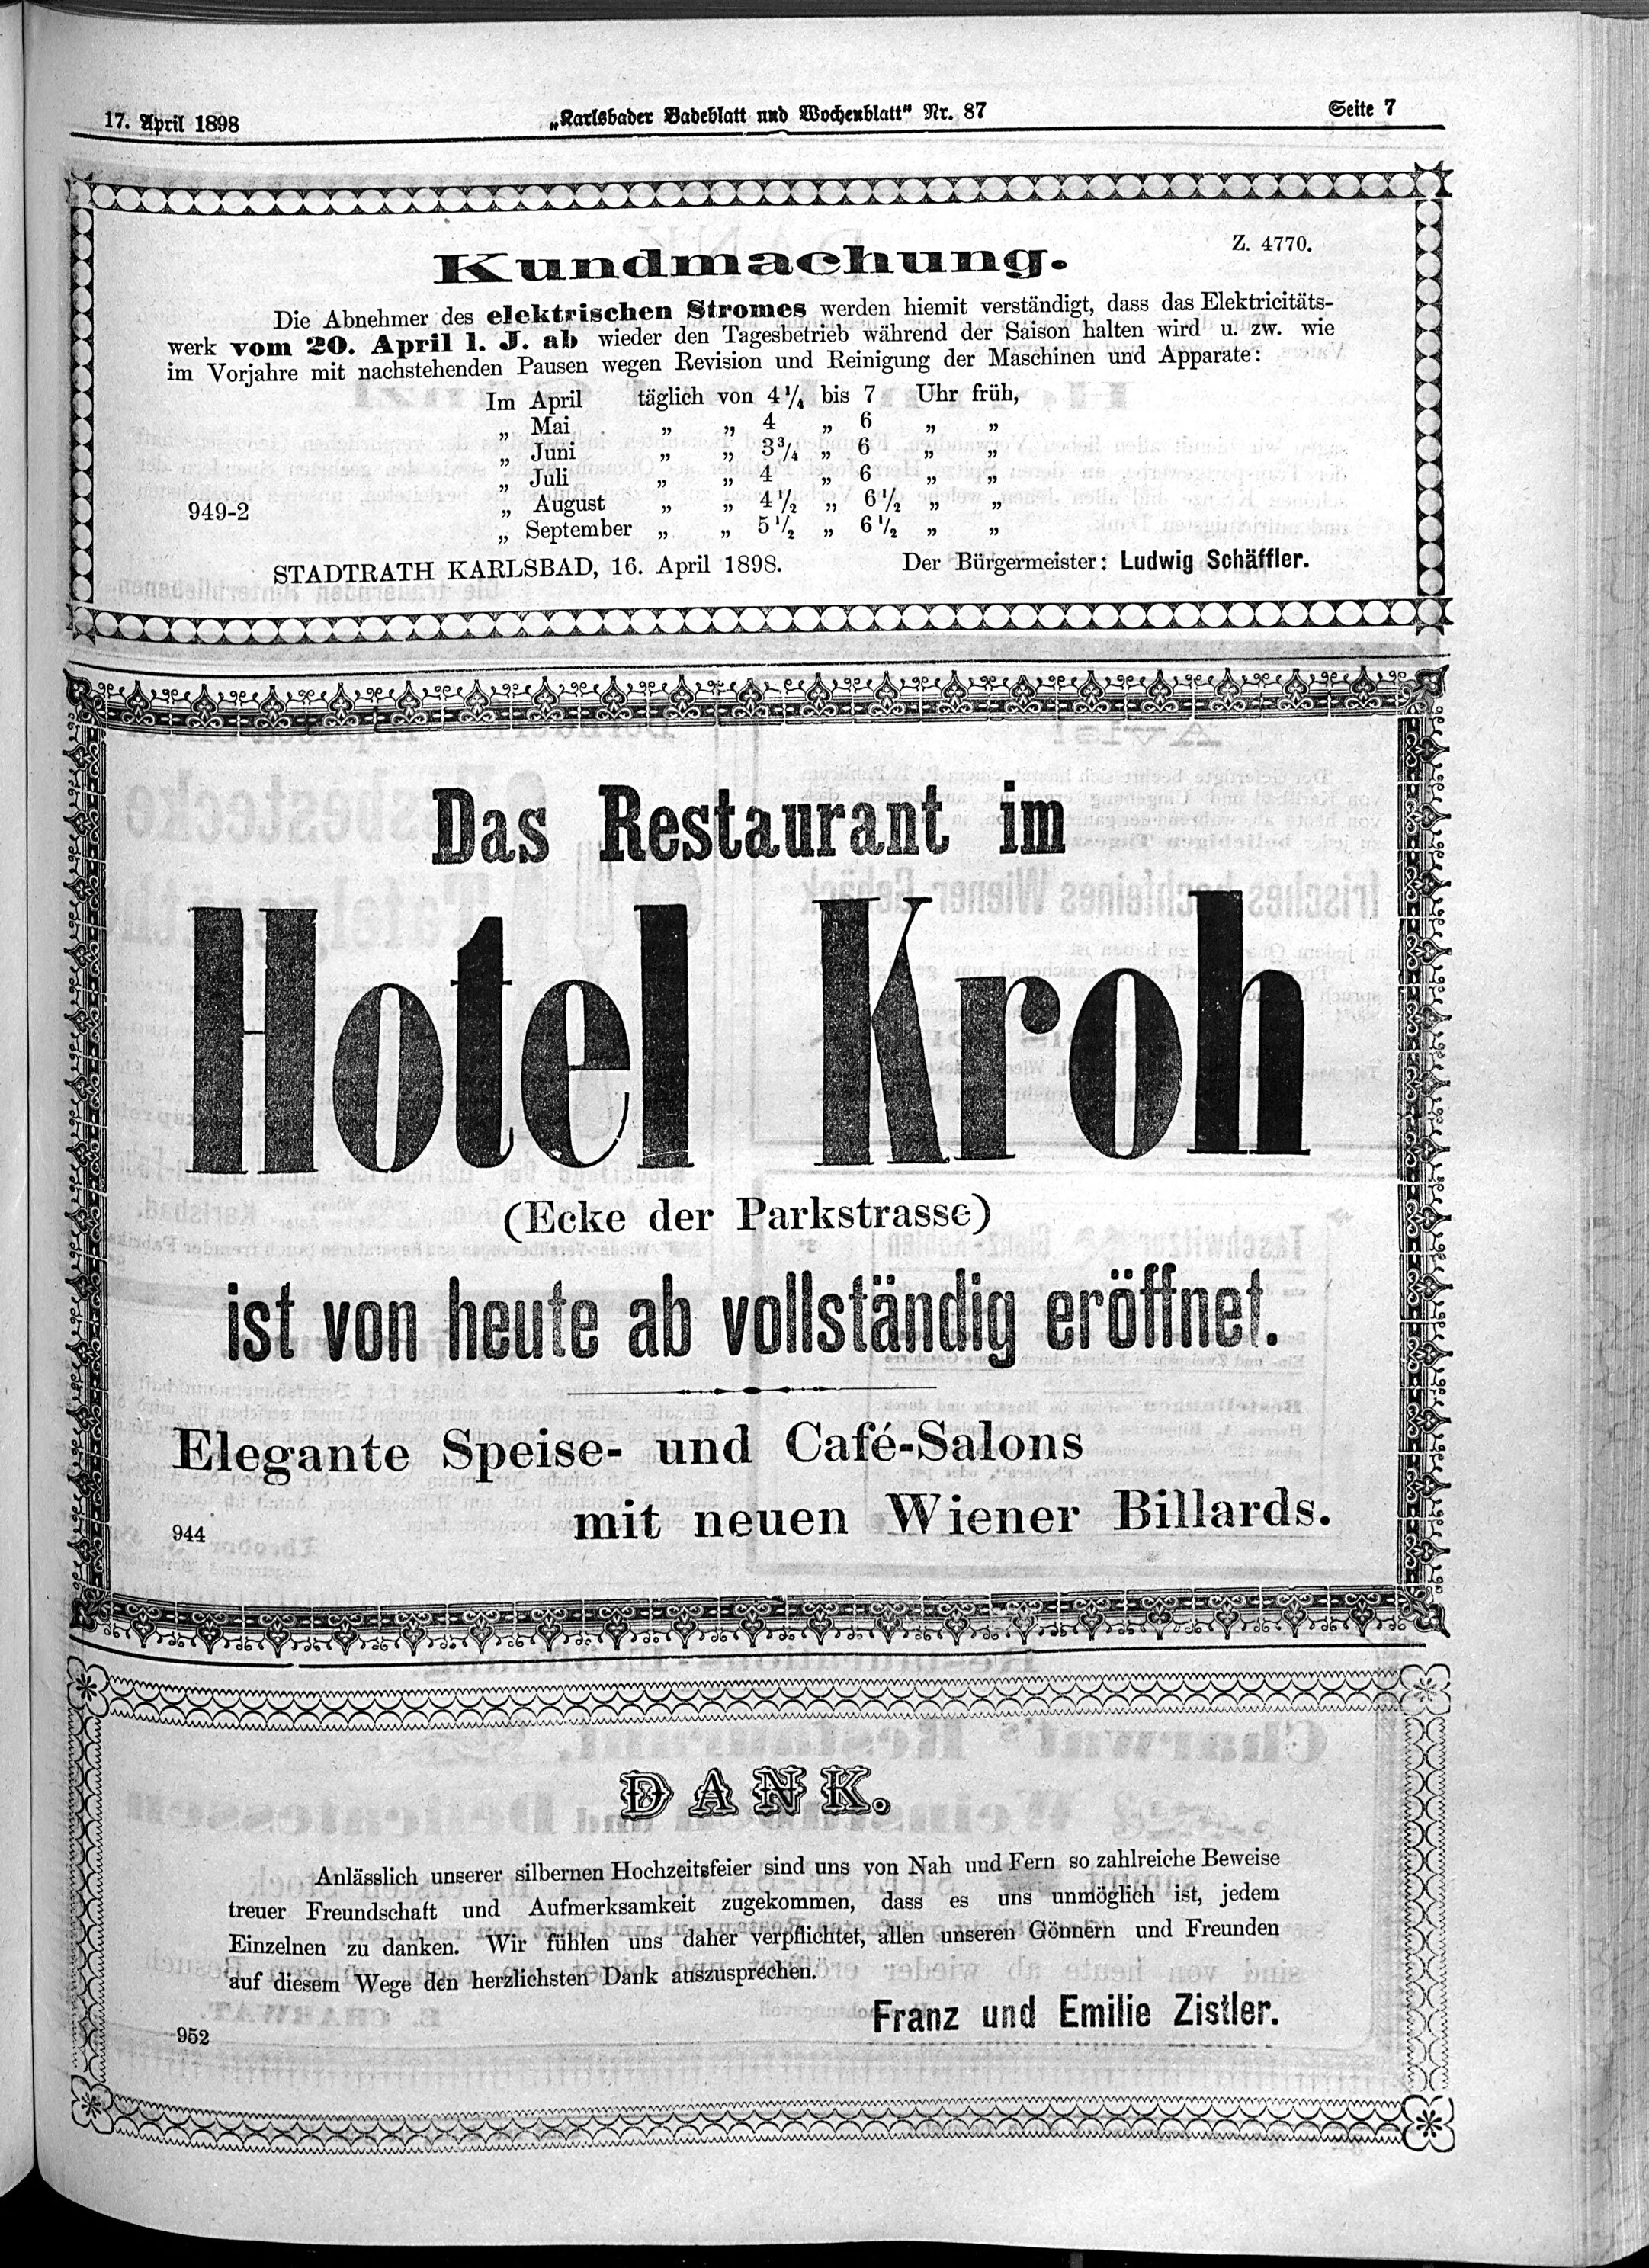 7. karlsbader-badeblatt-1898-04-17-n87_3945